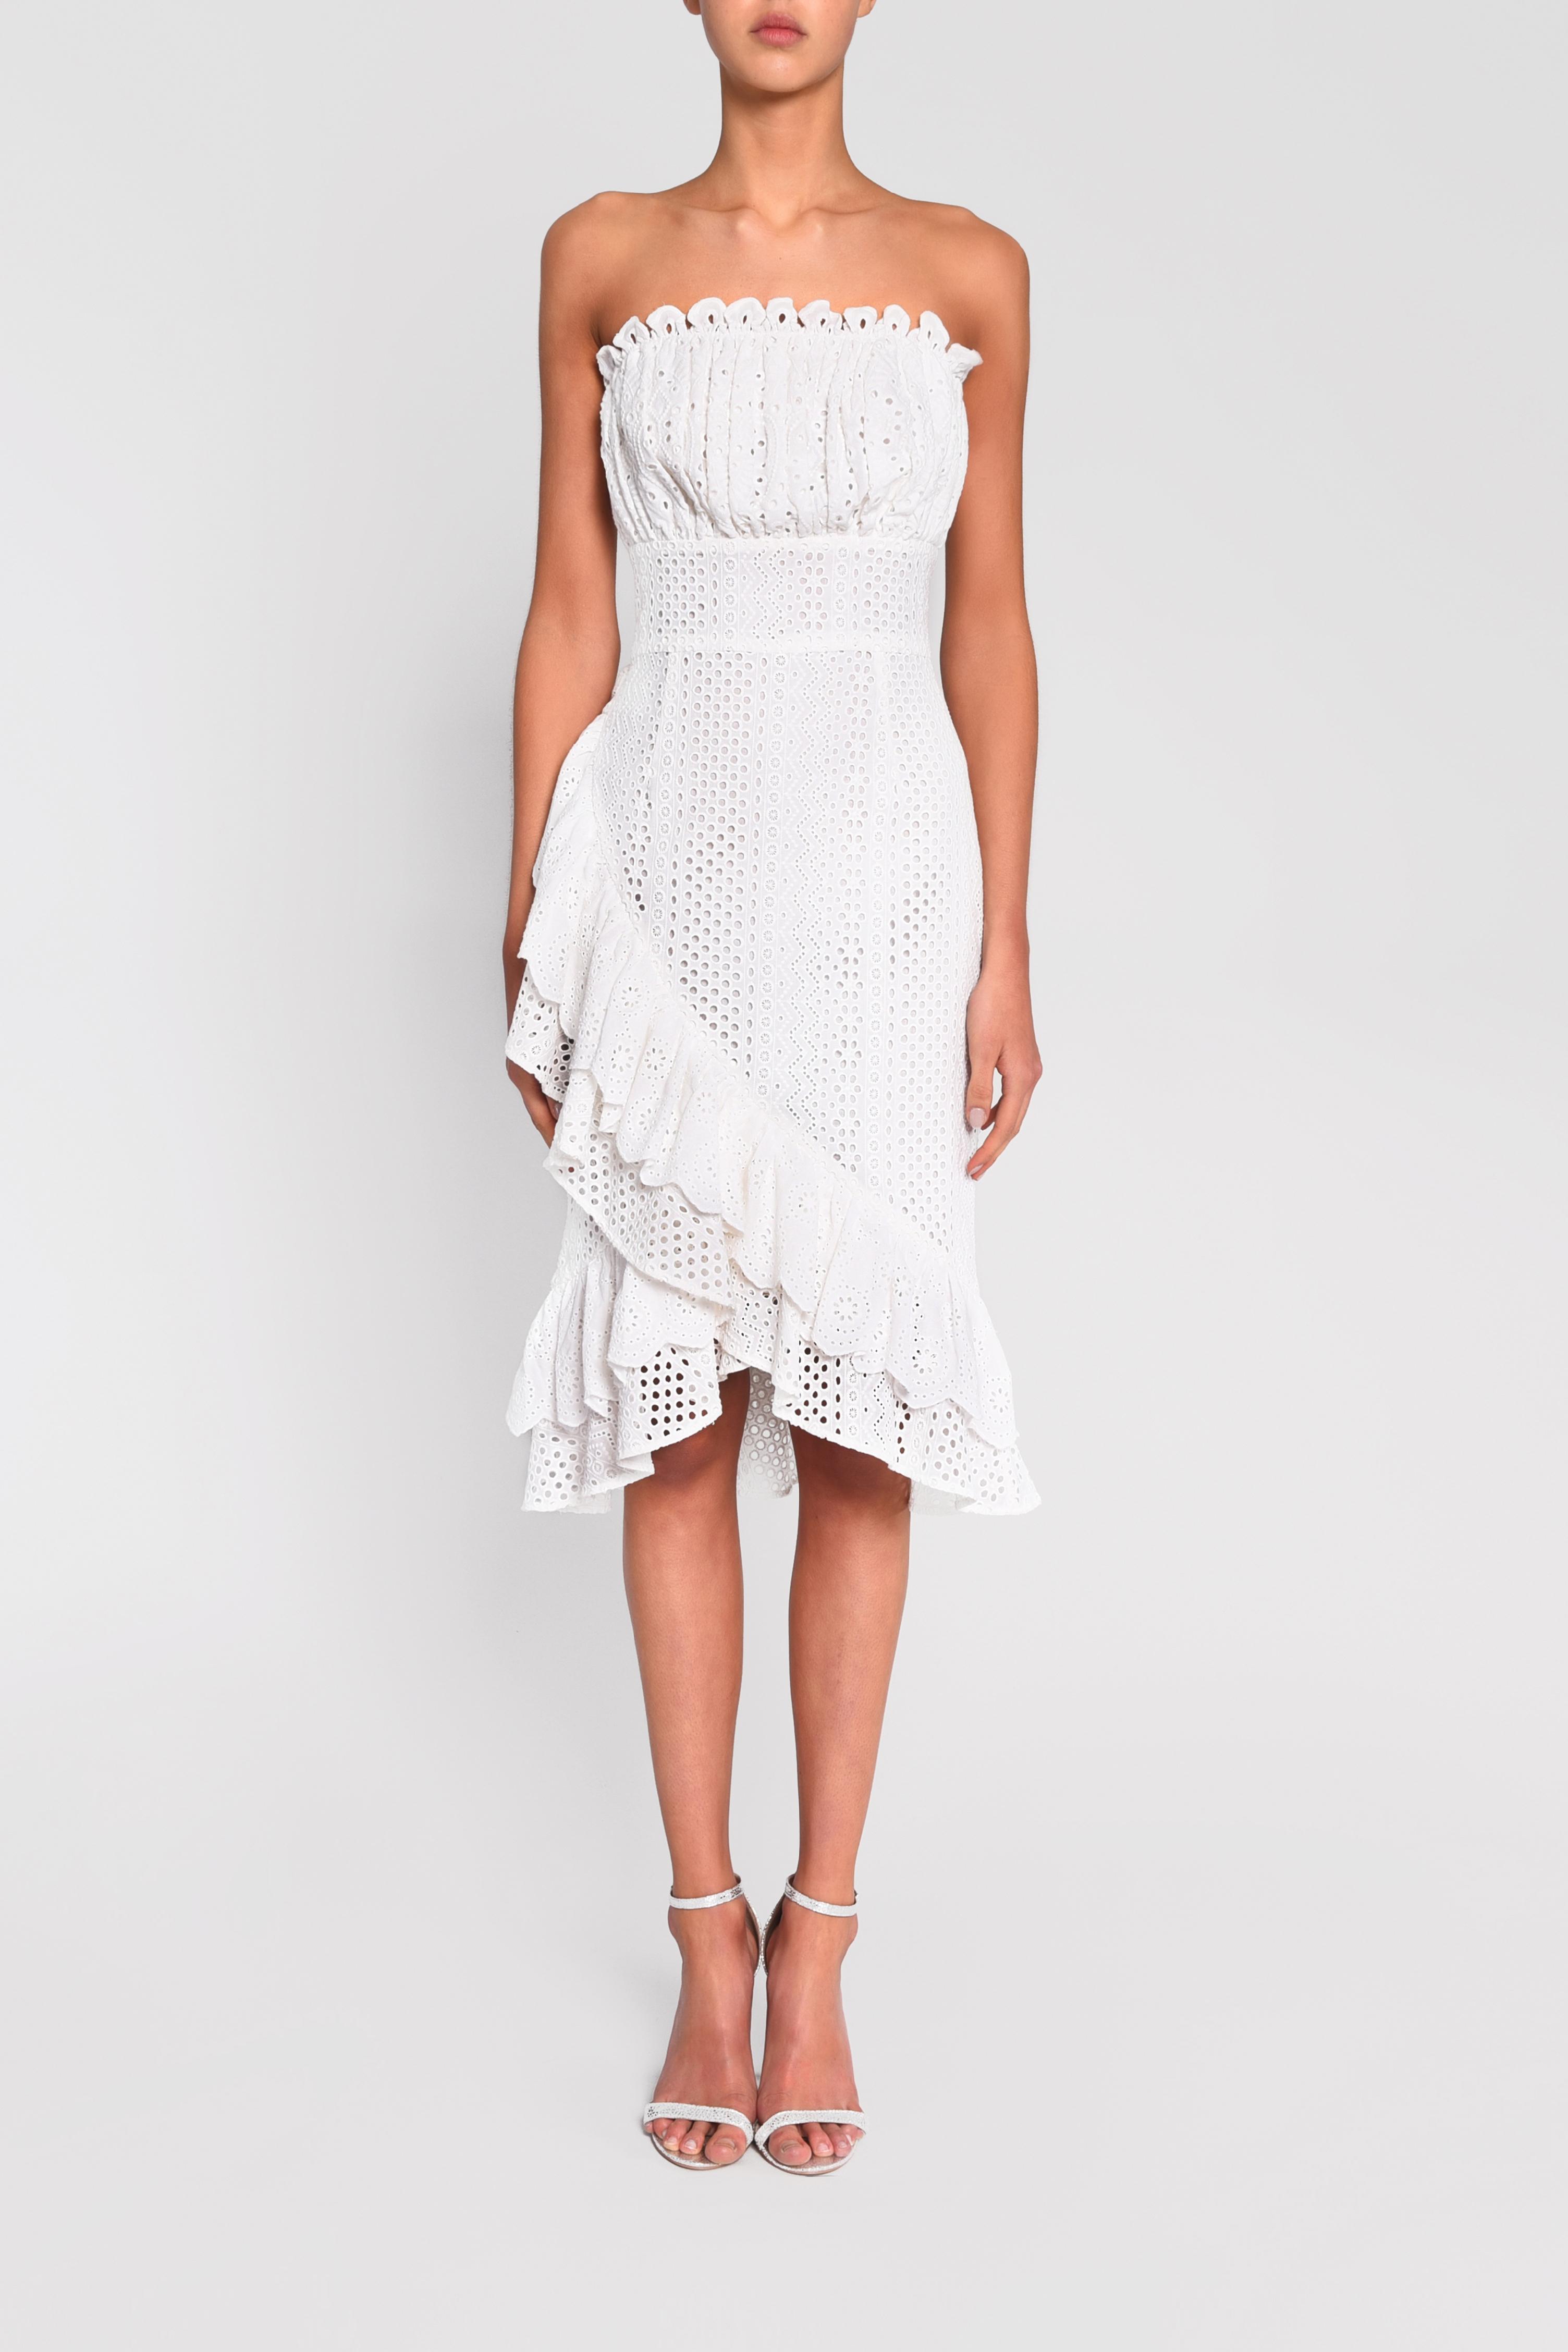 strapless white dress midi